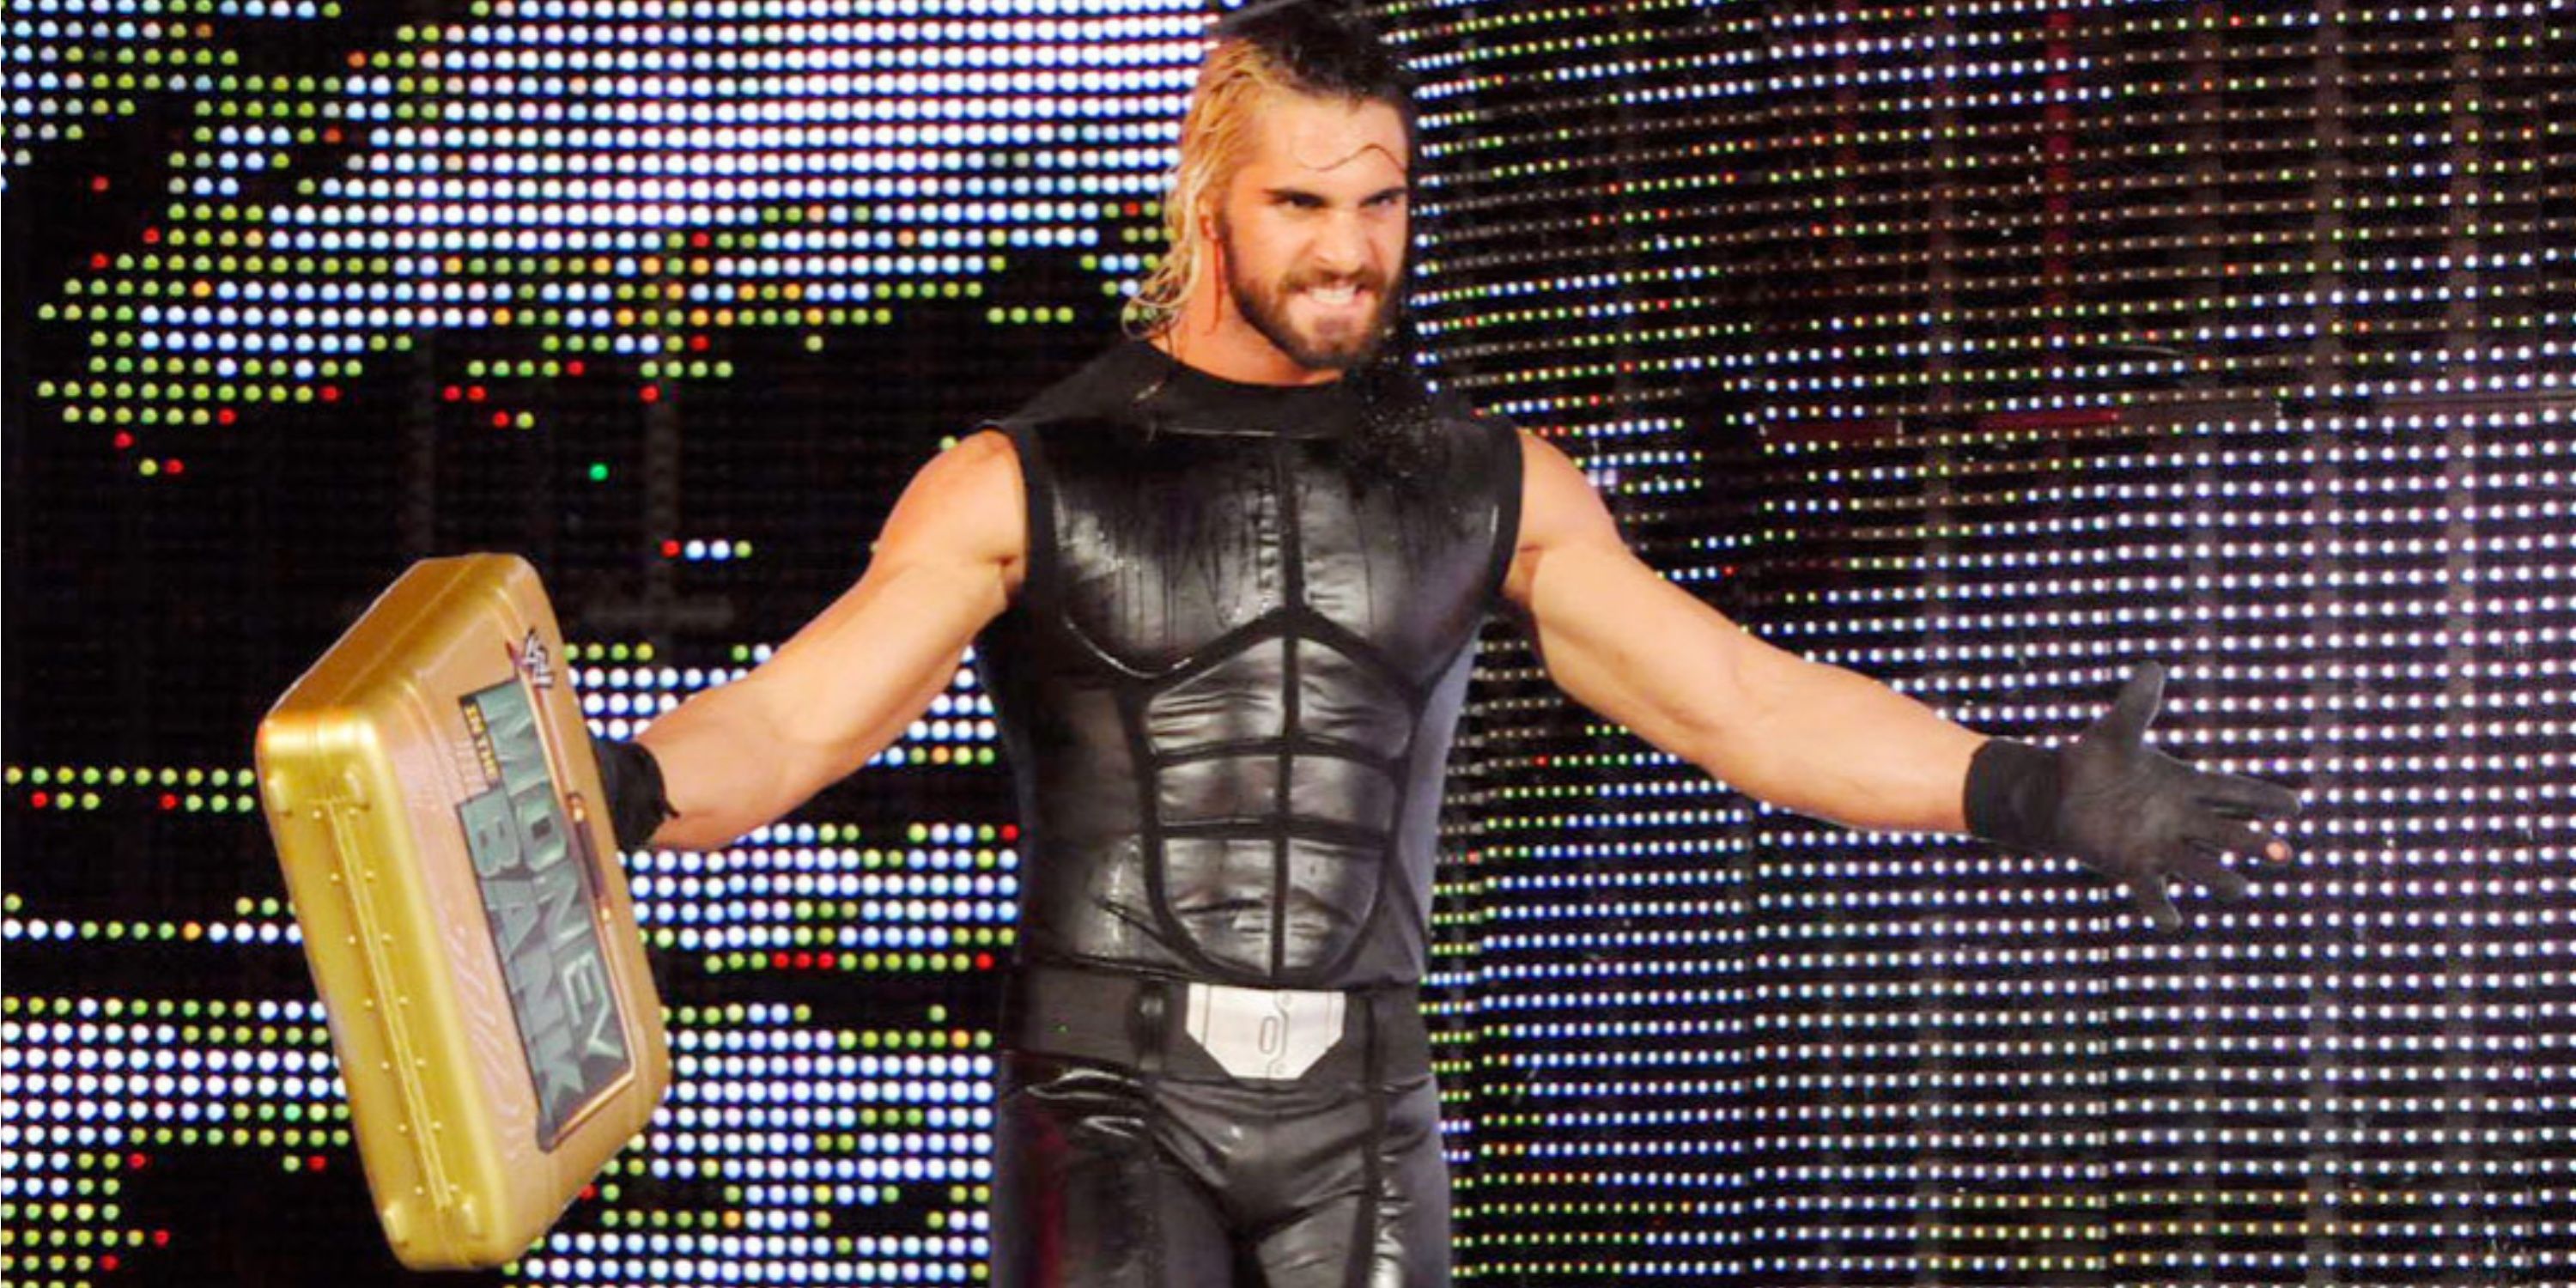 WWE's Seth Rollins